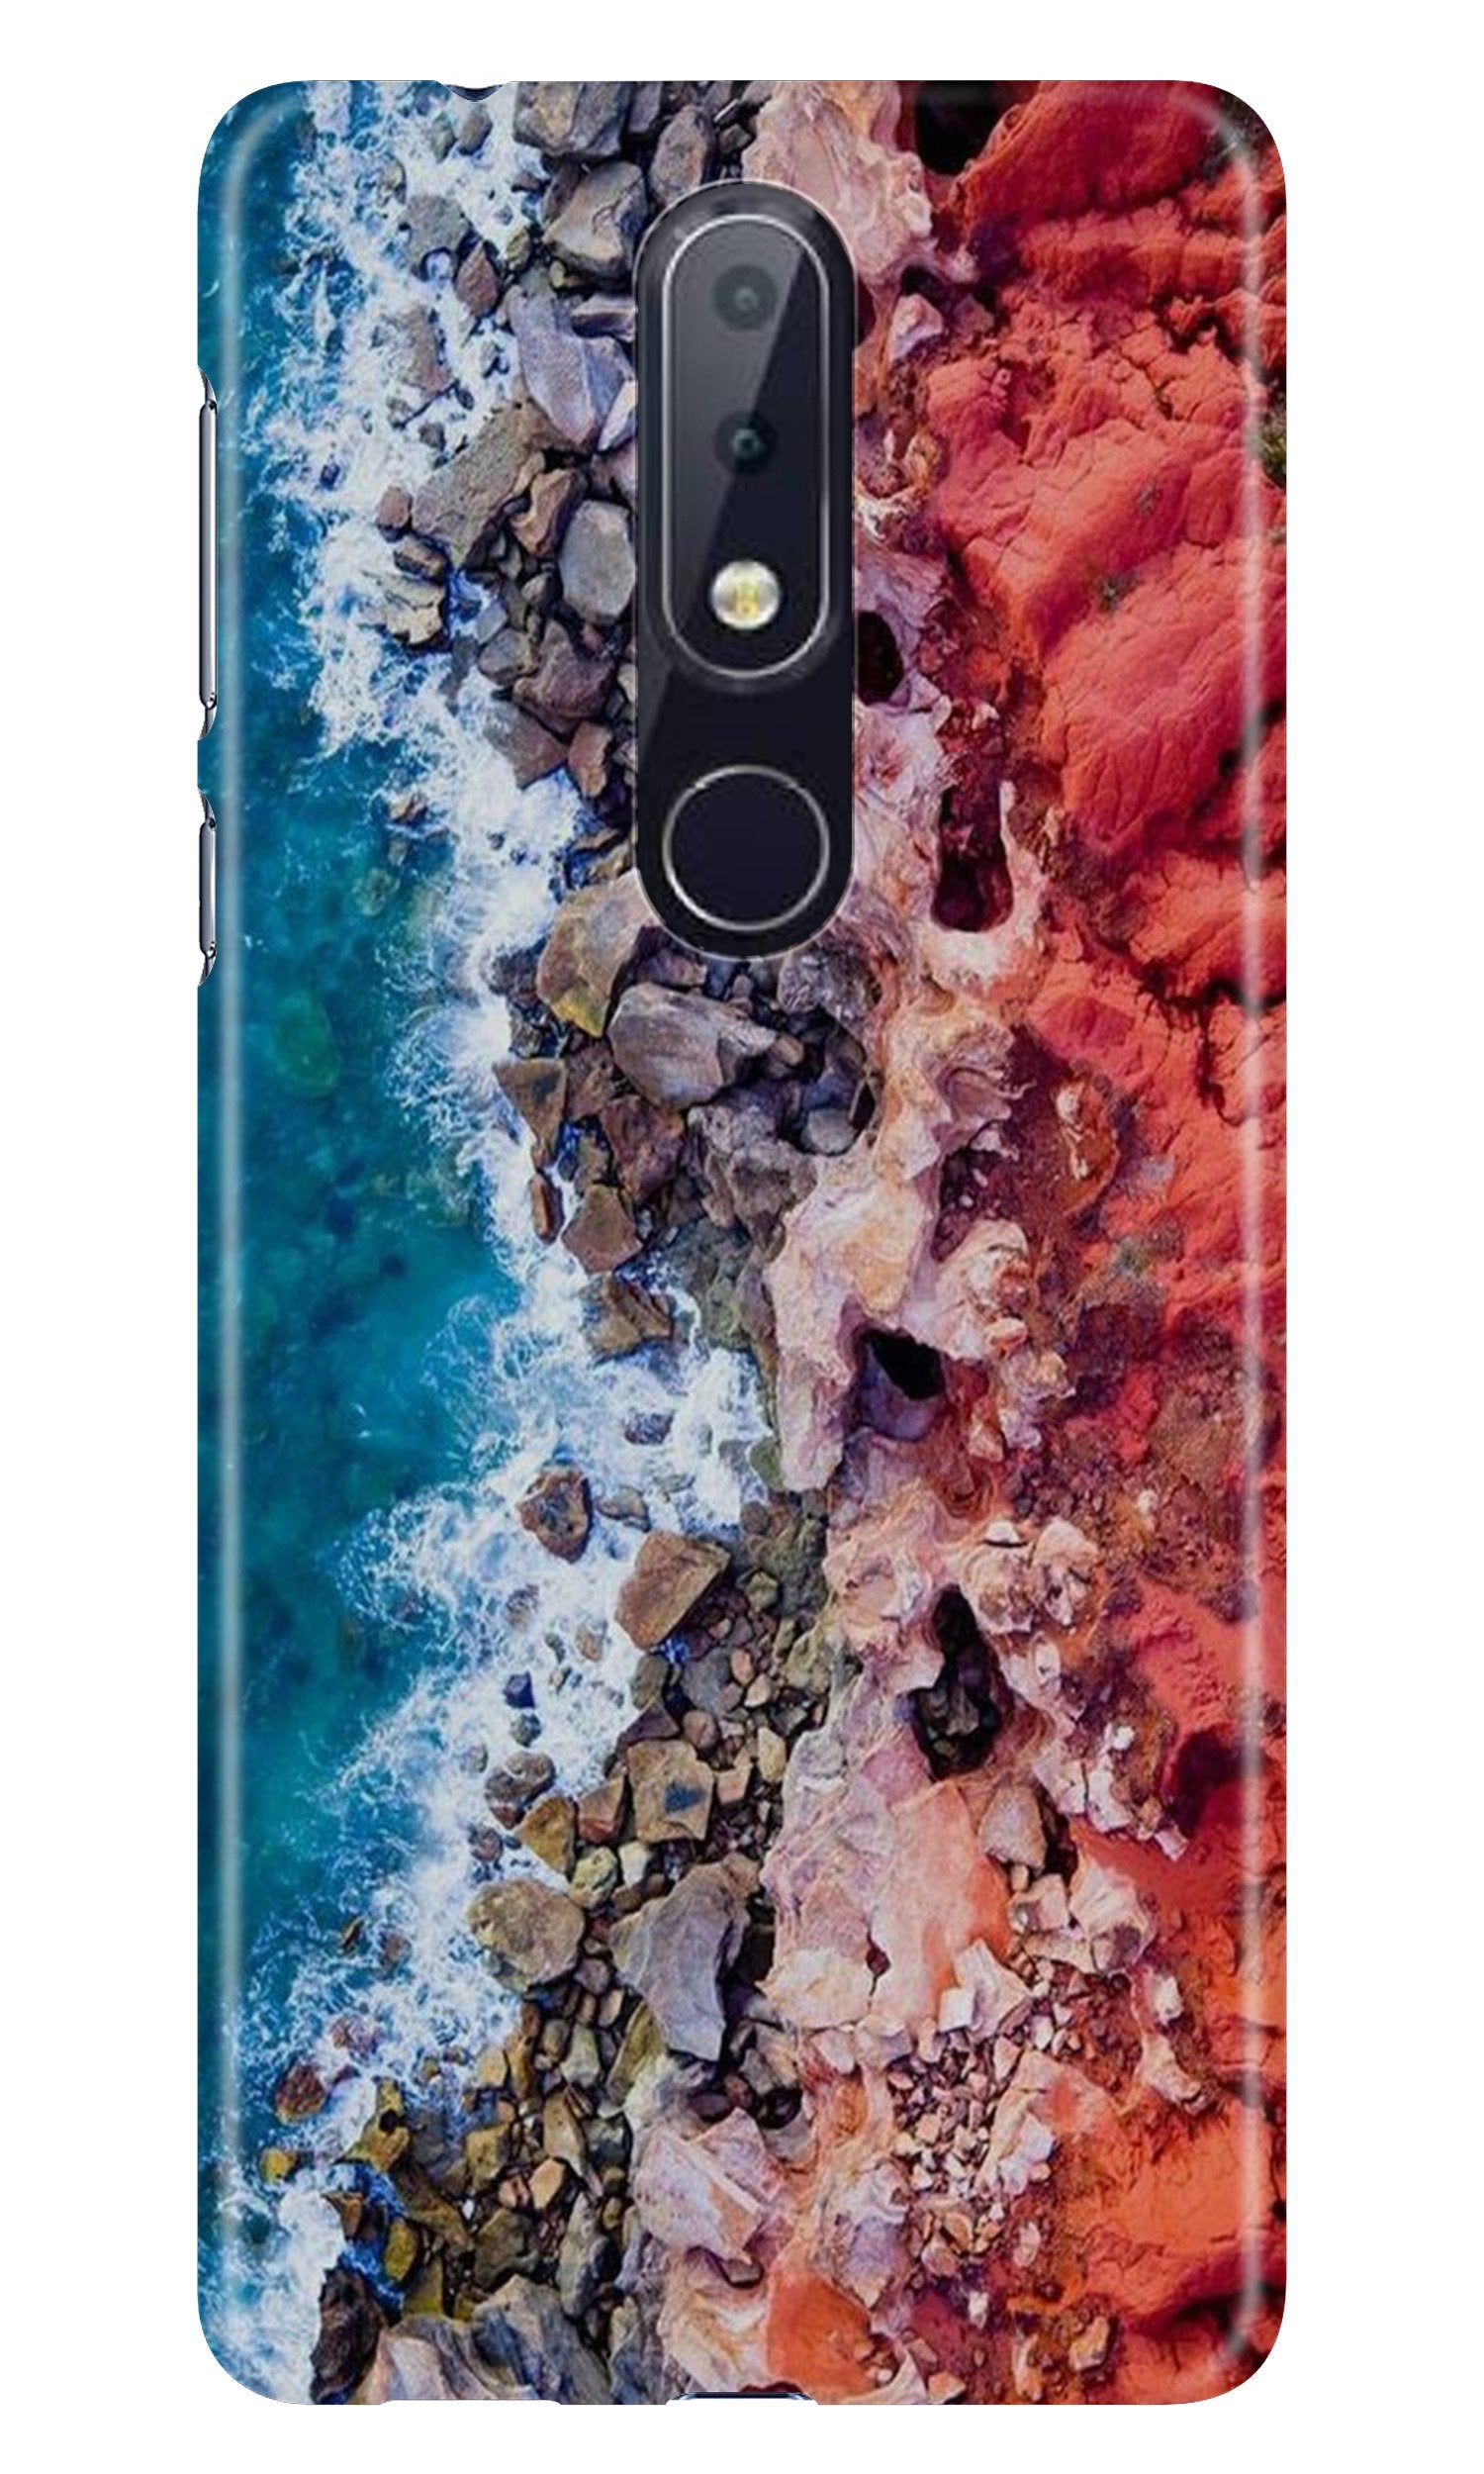 Sea Shore Case for Nokia 7.1 (Design No. 273)